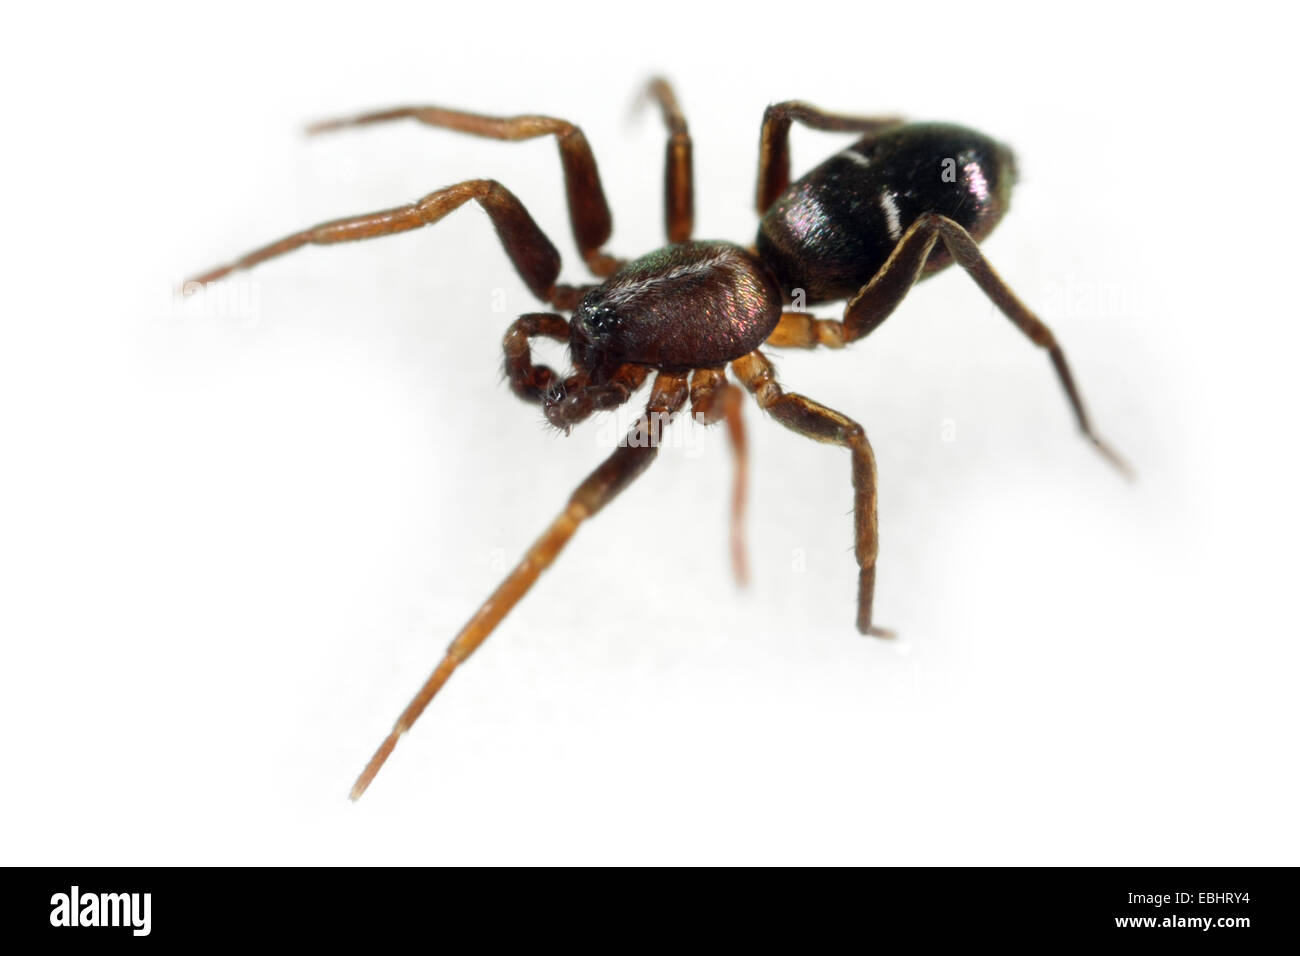 Ein männlicher Pine-Tree Ant-Spider (Micaria subopaca) auf einem weißen Hintergrund, ein Teil der Familie Gnaphosidae - Stealthy Boden Spinnen. Stockfoto